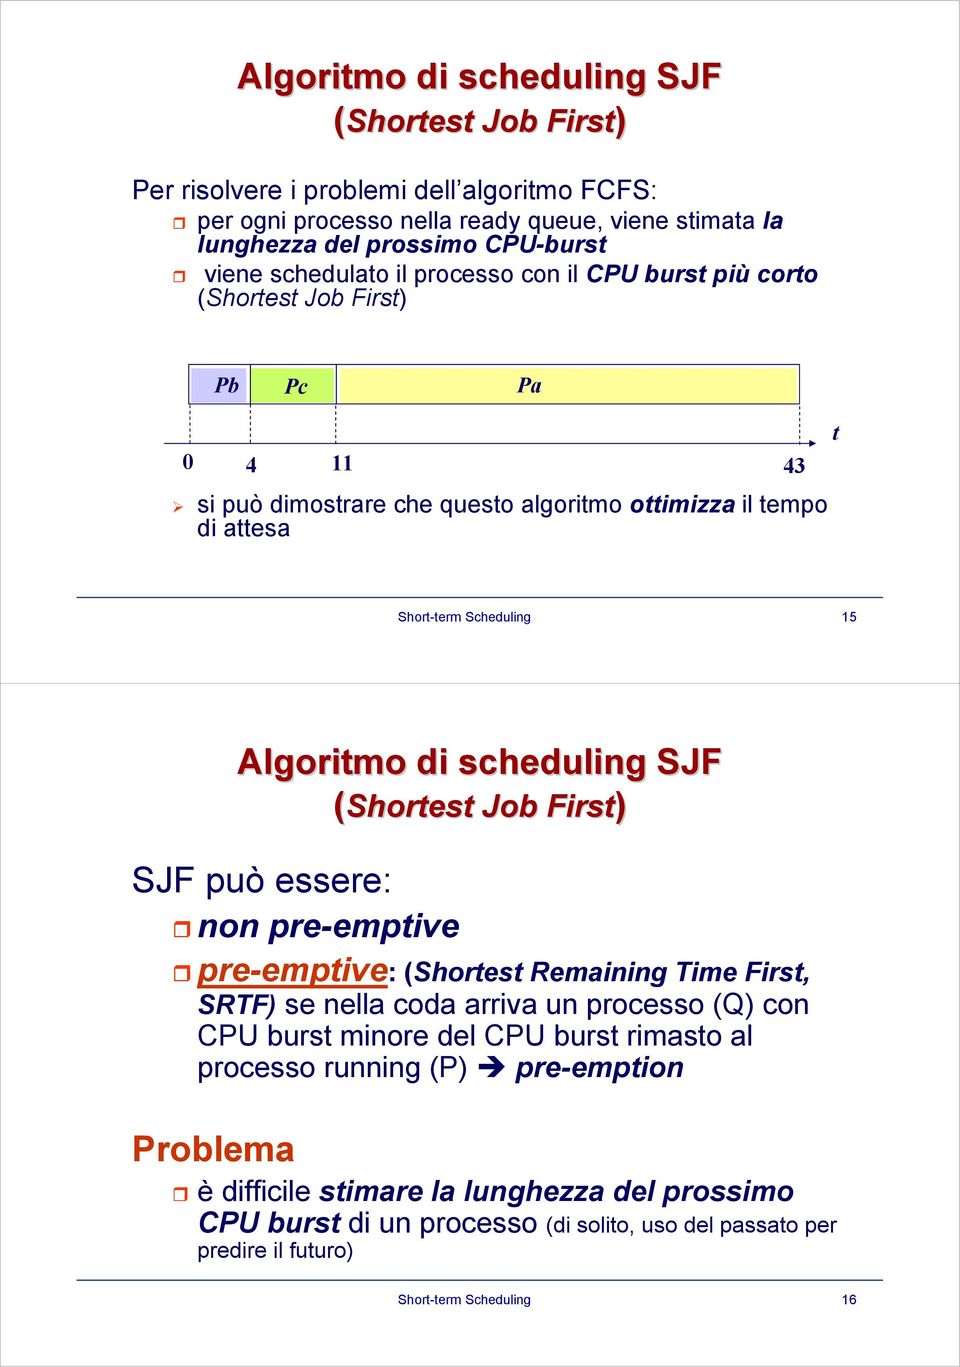 Algoritmo di scheduling SJF SJF può essere: non pre-emptive (Shortest Job First) pre-emptive: (Shortest Remaining Time First, SRTF) se nella coda arriva un processo (Q) con CPU burst minore del